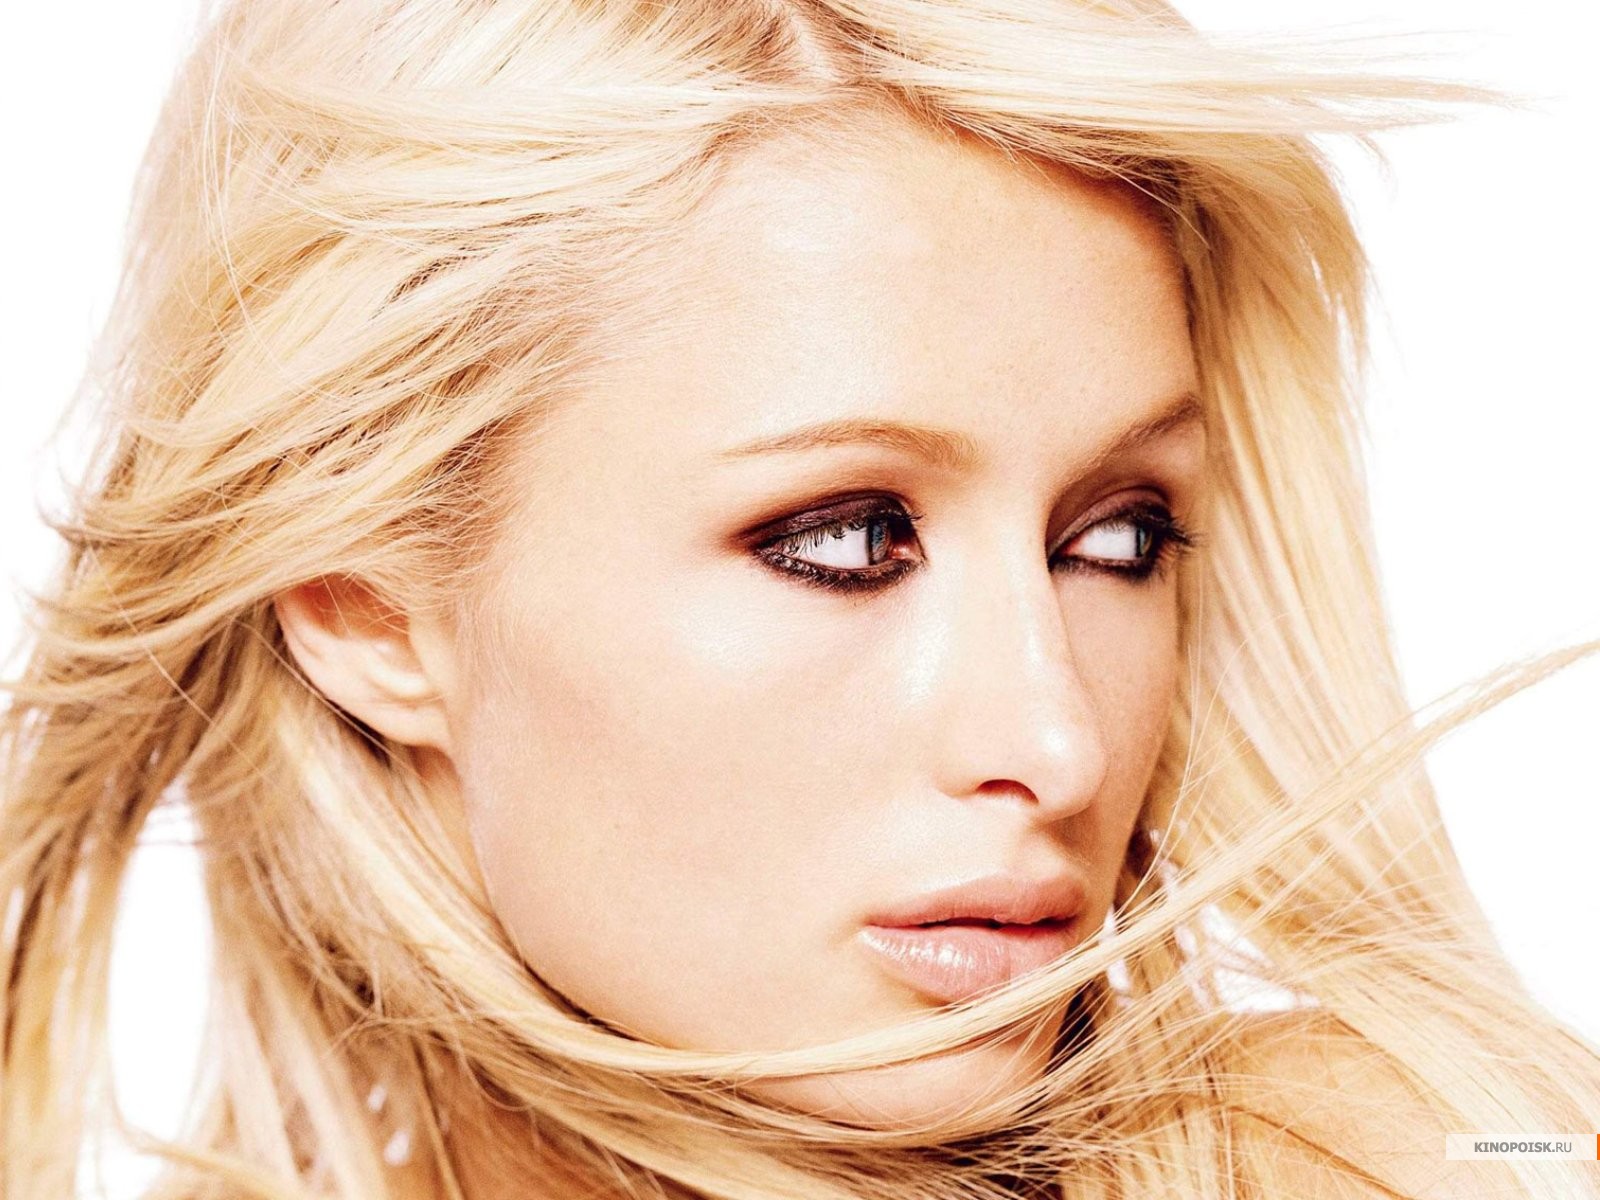 Download HQ Paris Hilton wallpaper / Celebrities Female / 1600x1200